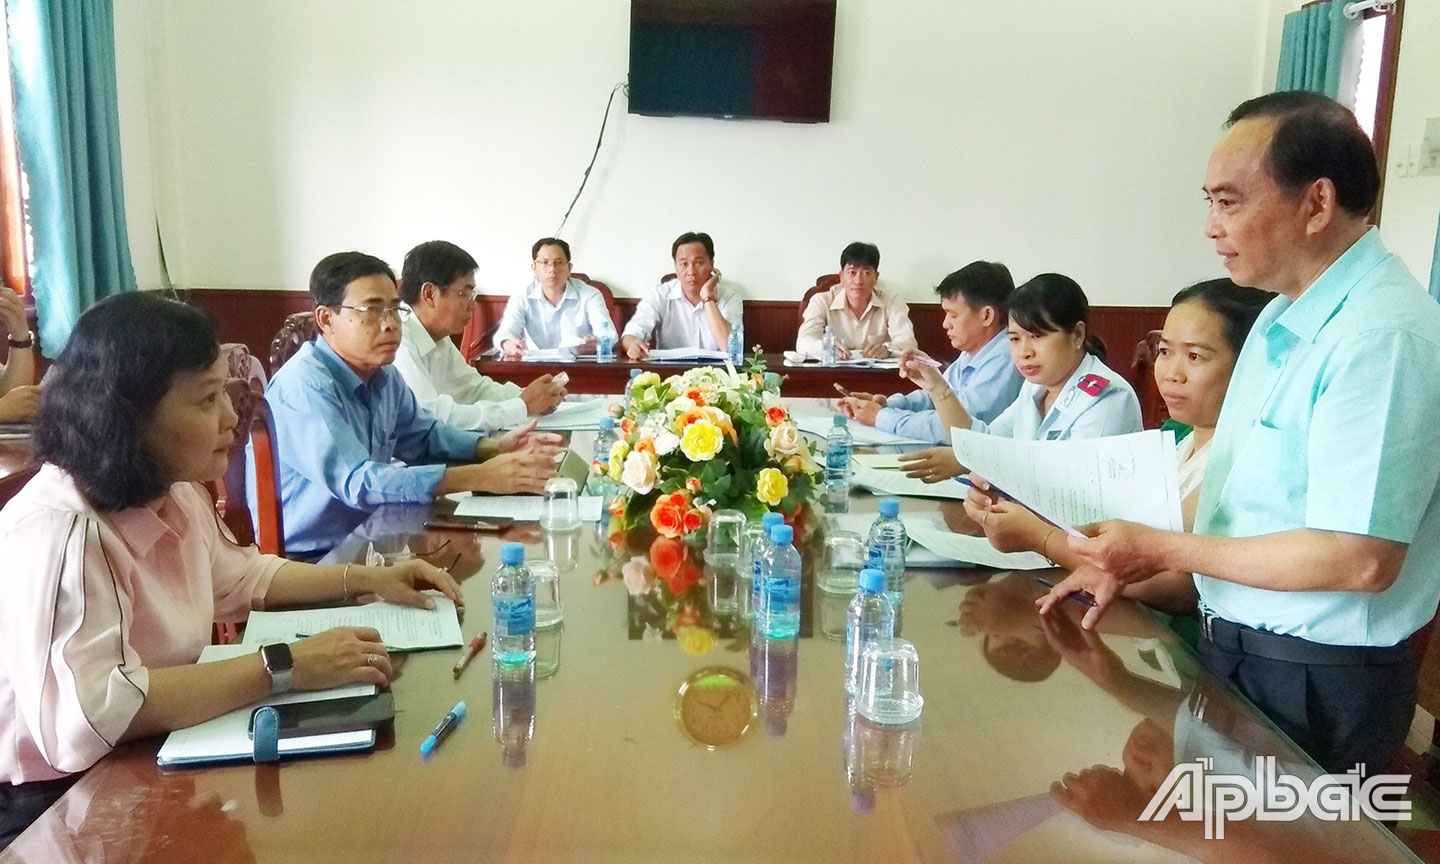 Đồng chí Võ Văn Tân, phát biểu nhận xét sau giám sát tại UBND huyện Gò Công Đông với Phó chủ tịch UBND huyện Lê Hồng Tâm, các thành viên của BCĐ PCTHCTL huyện